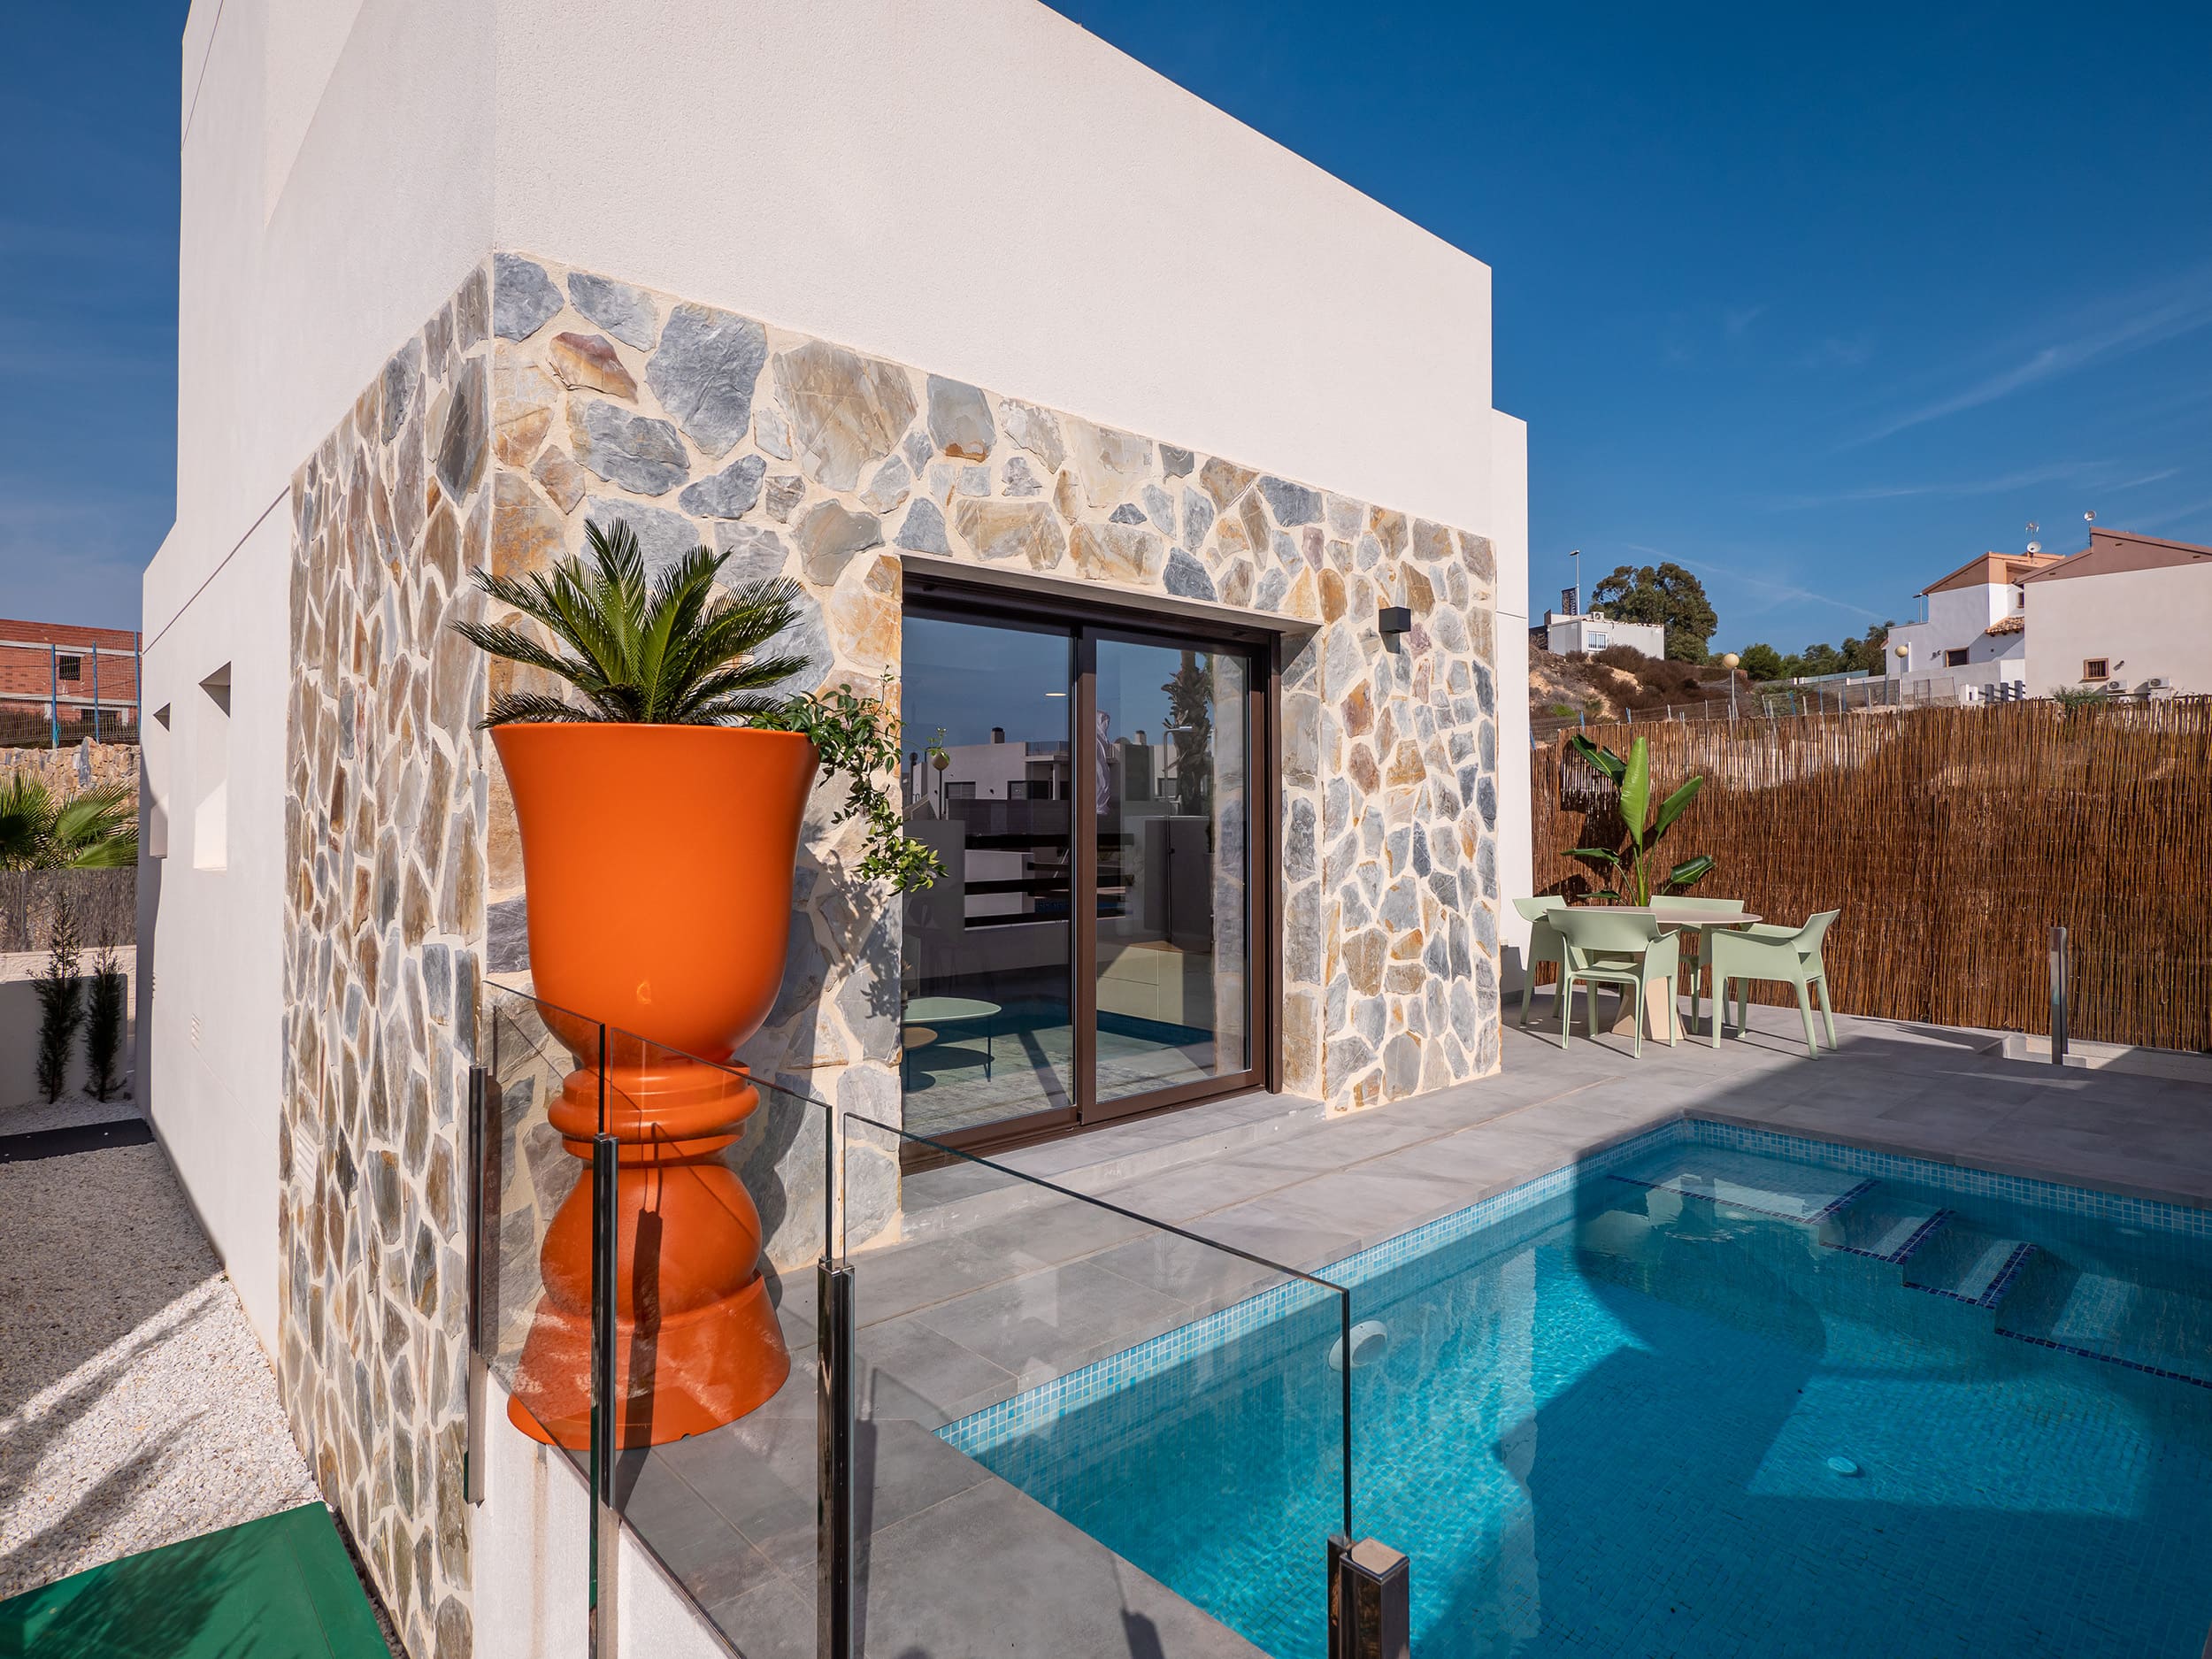 Nieuwbouw hedendaagse villa’s te koop met privé zwembad in Villamartin.